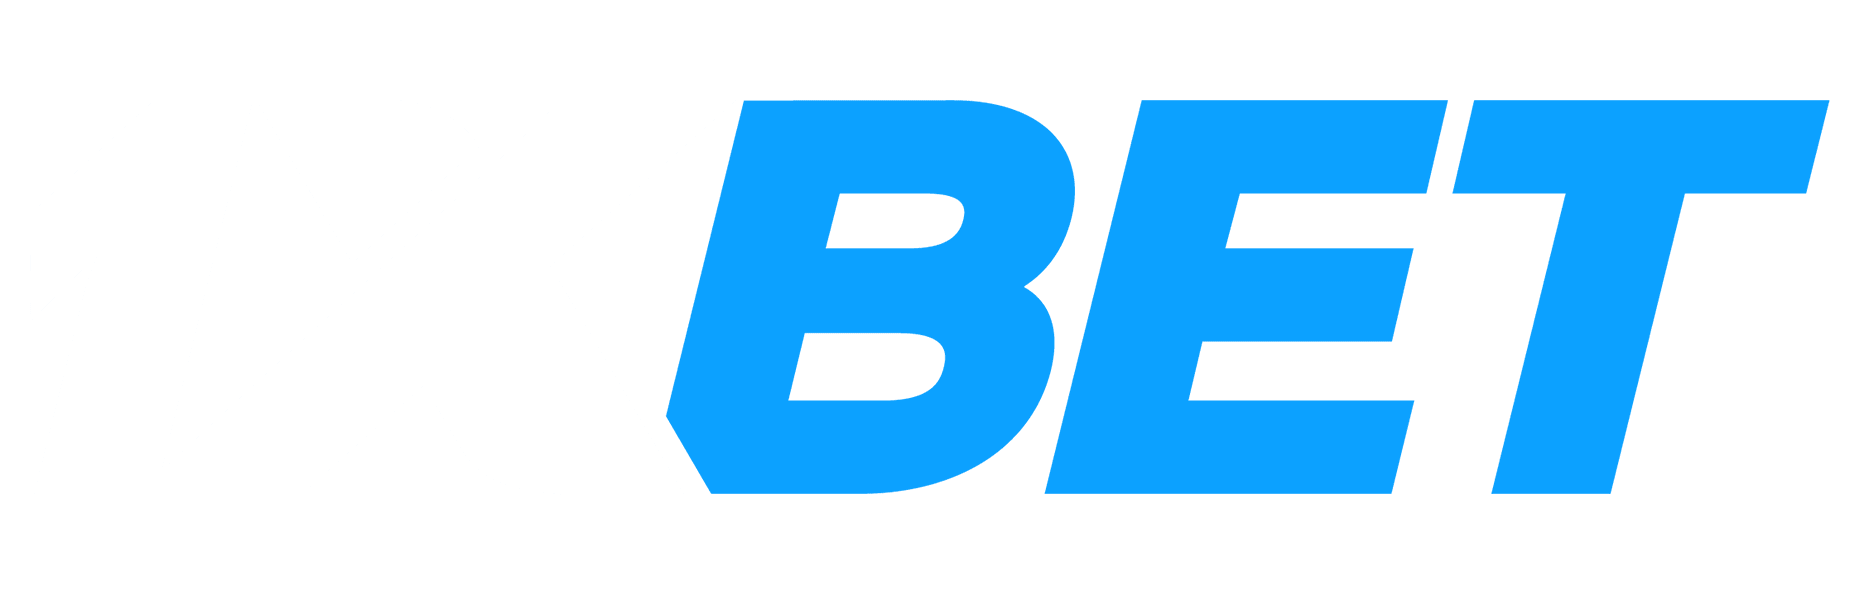 Logotipo 1xBet - Apostas esportivas e cassino online em Brasil